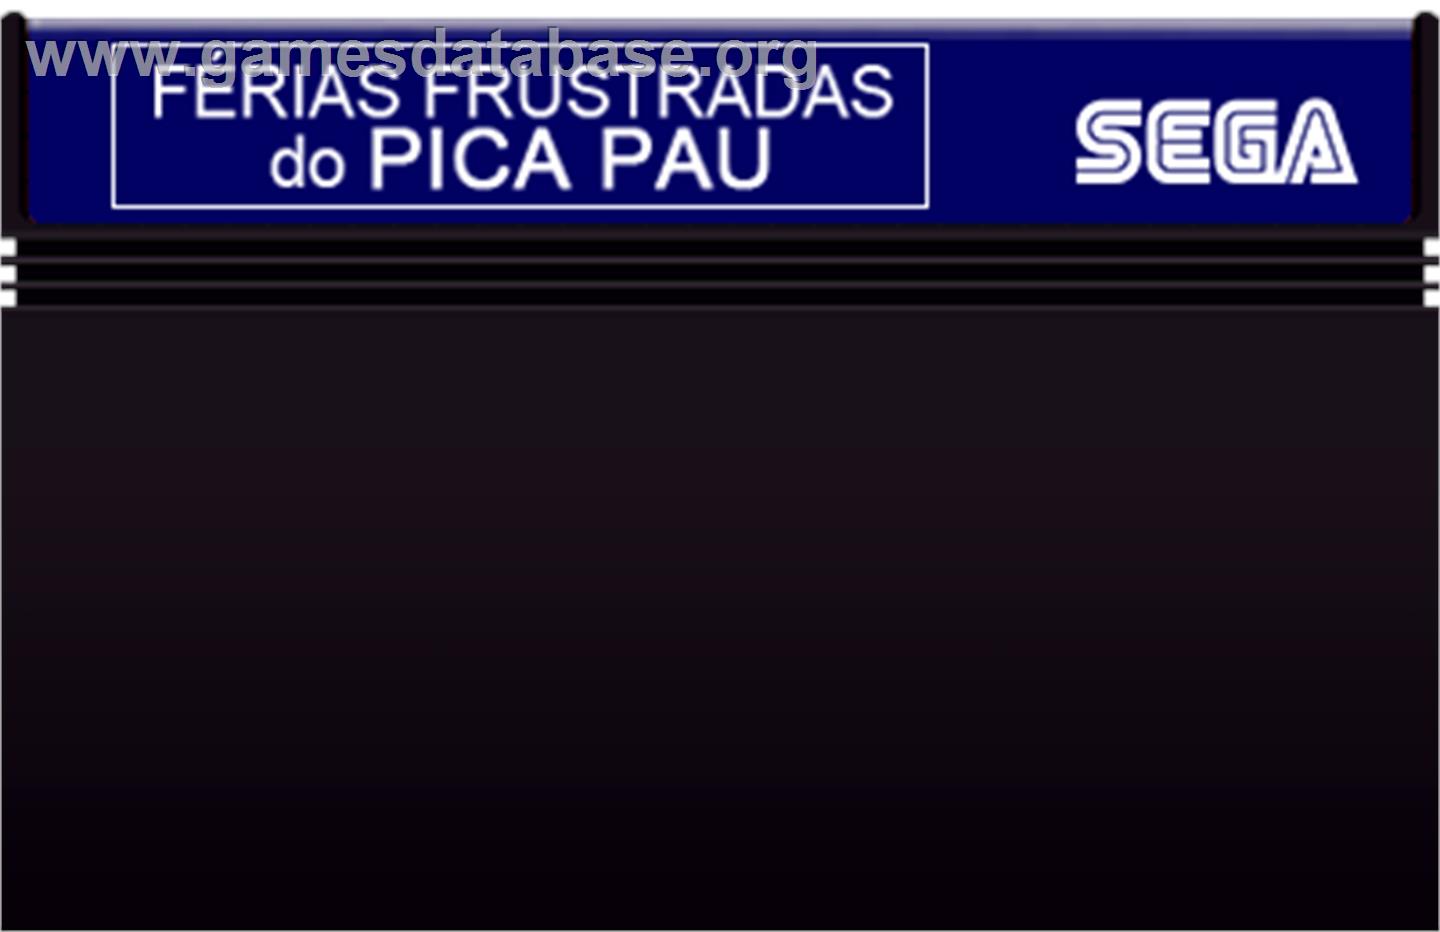 Férias Frustradas do Pica-Pau - Sega Master System - Artwork - Cartridge